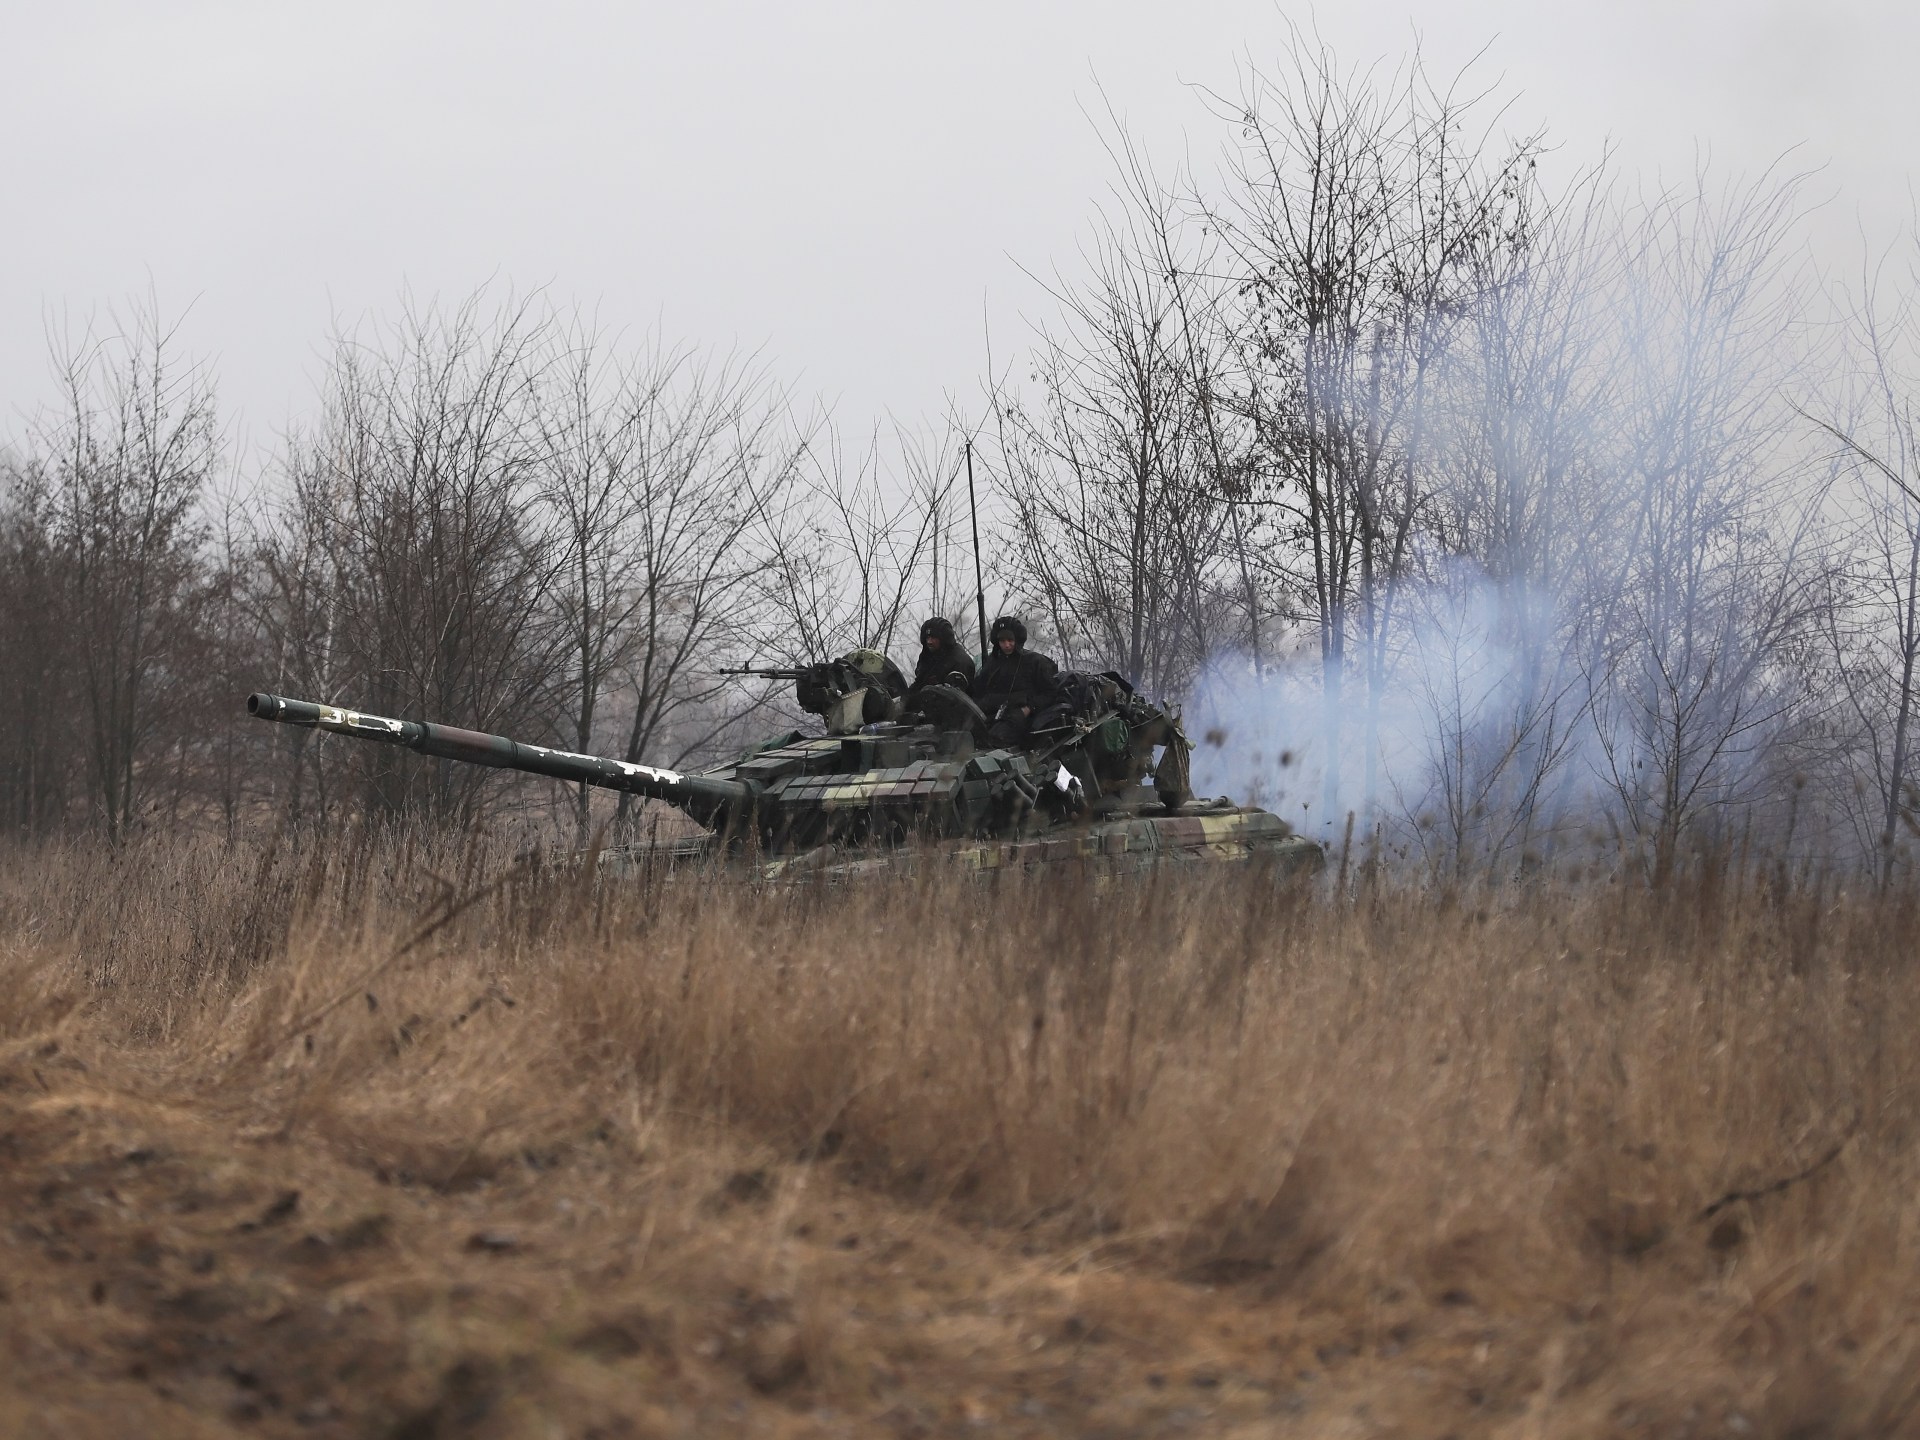 أوكرانيا تتفاوض مع الشركات الغربية بشأن إنتاج واختبار الأسلحة في البلاد